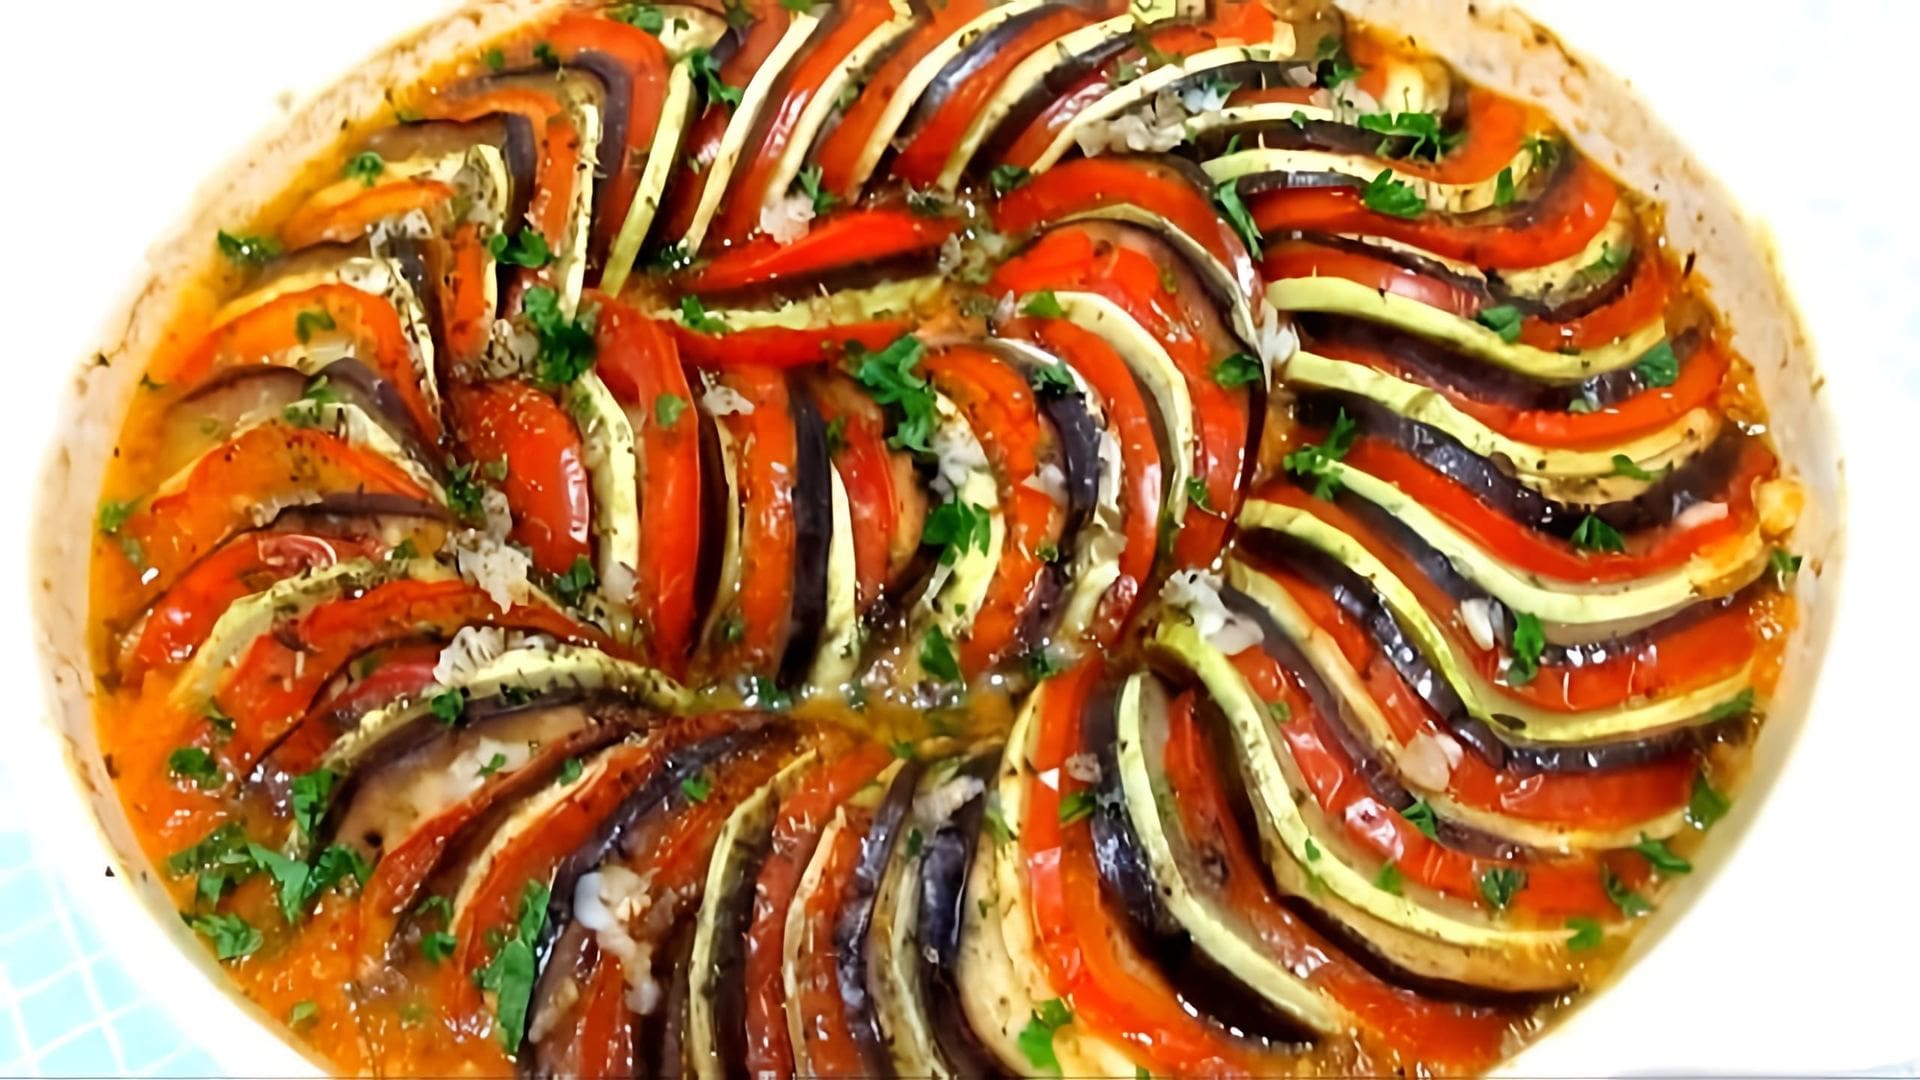 В данном видео демонстрируется процесс приготовления рататуя - блюда французской кухни, состоящего из соуса и овощей